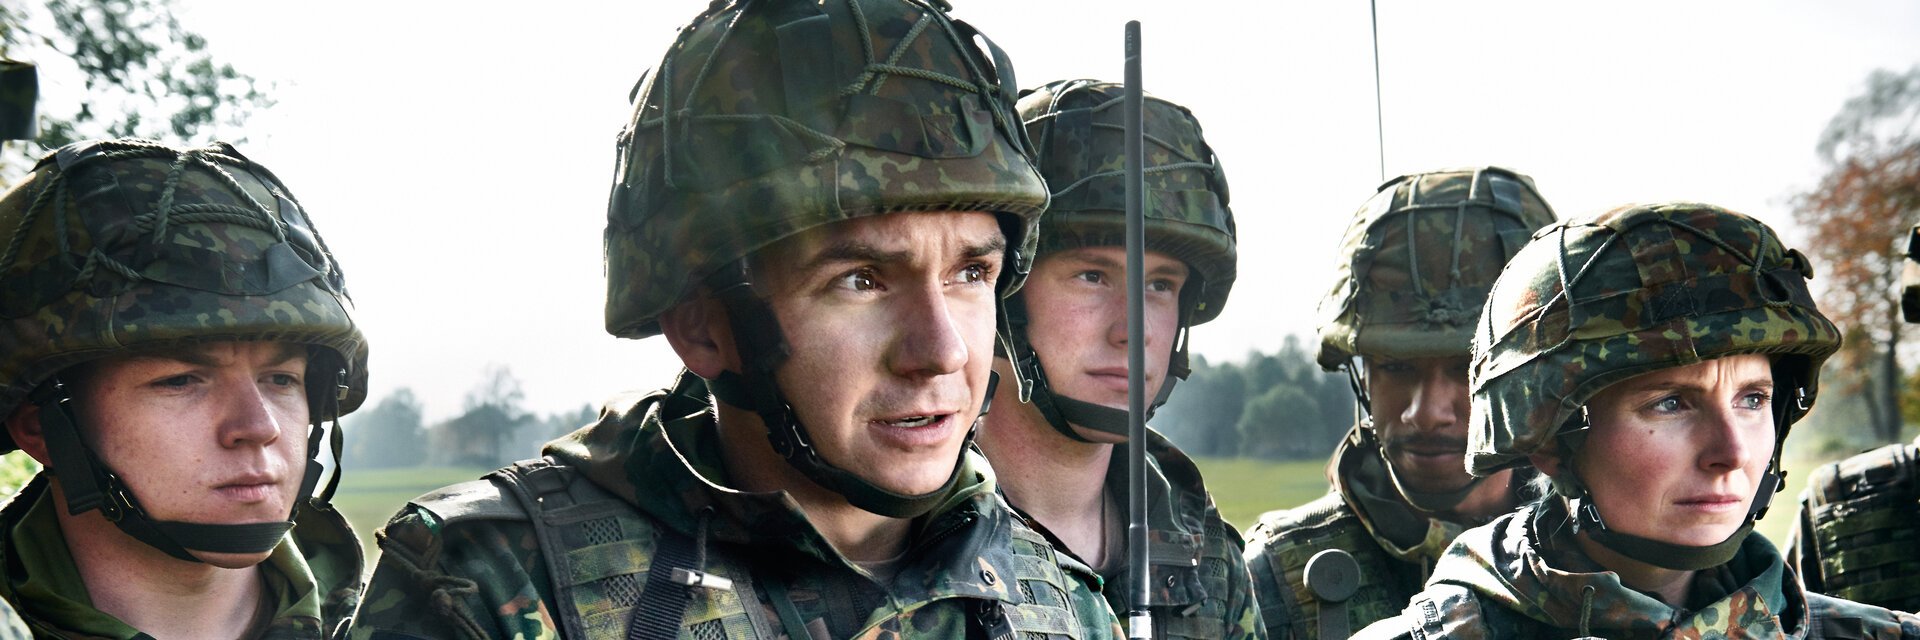 Offizierin / Offizier (m/w/d) mit Studium - Bundeswehr Karriere